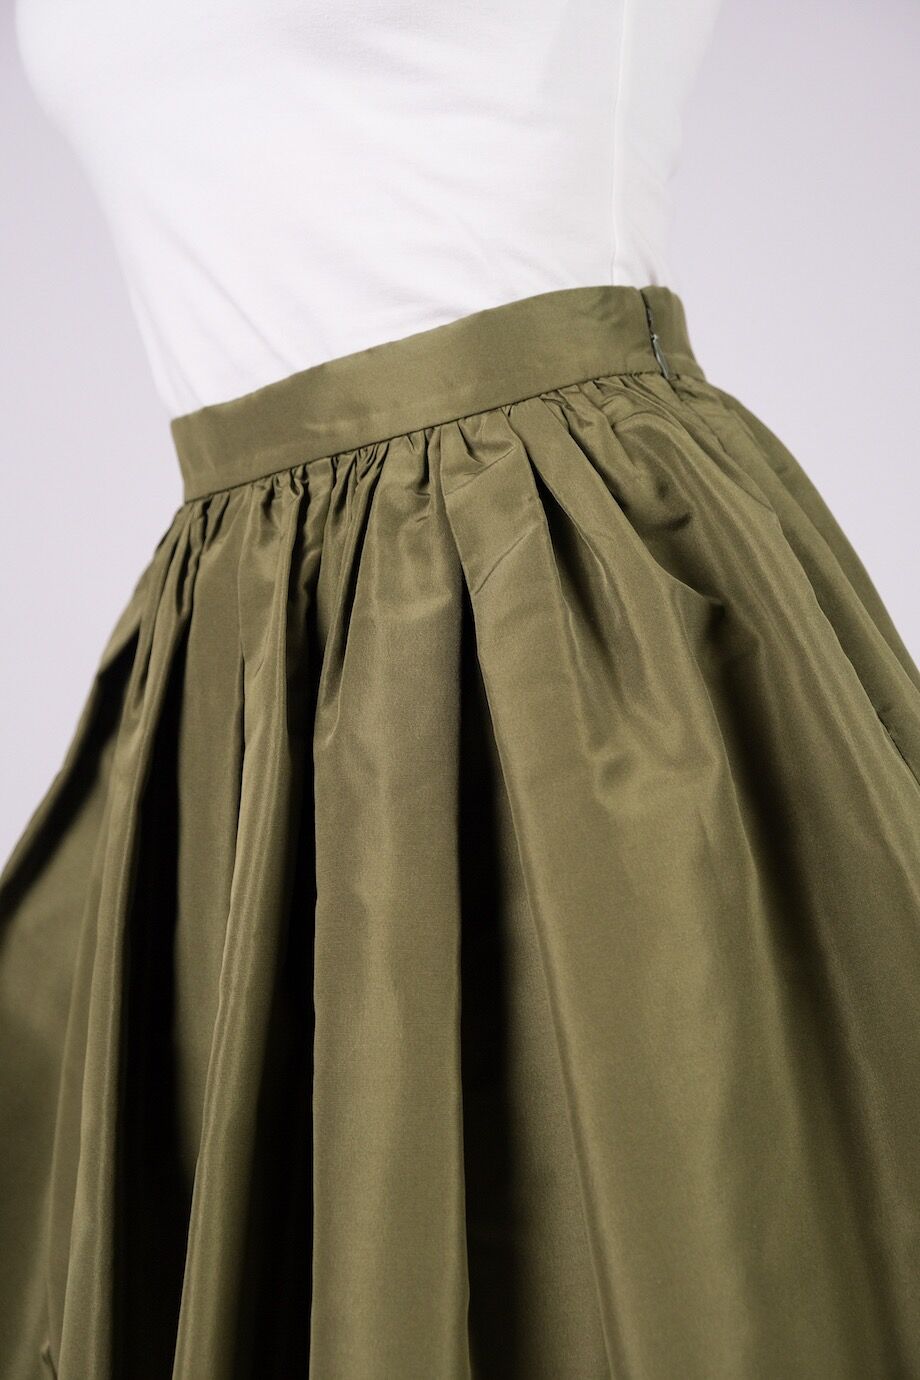 image 5 Шелковая юбка пышного кроя выше колена